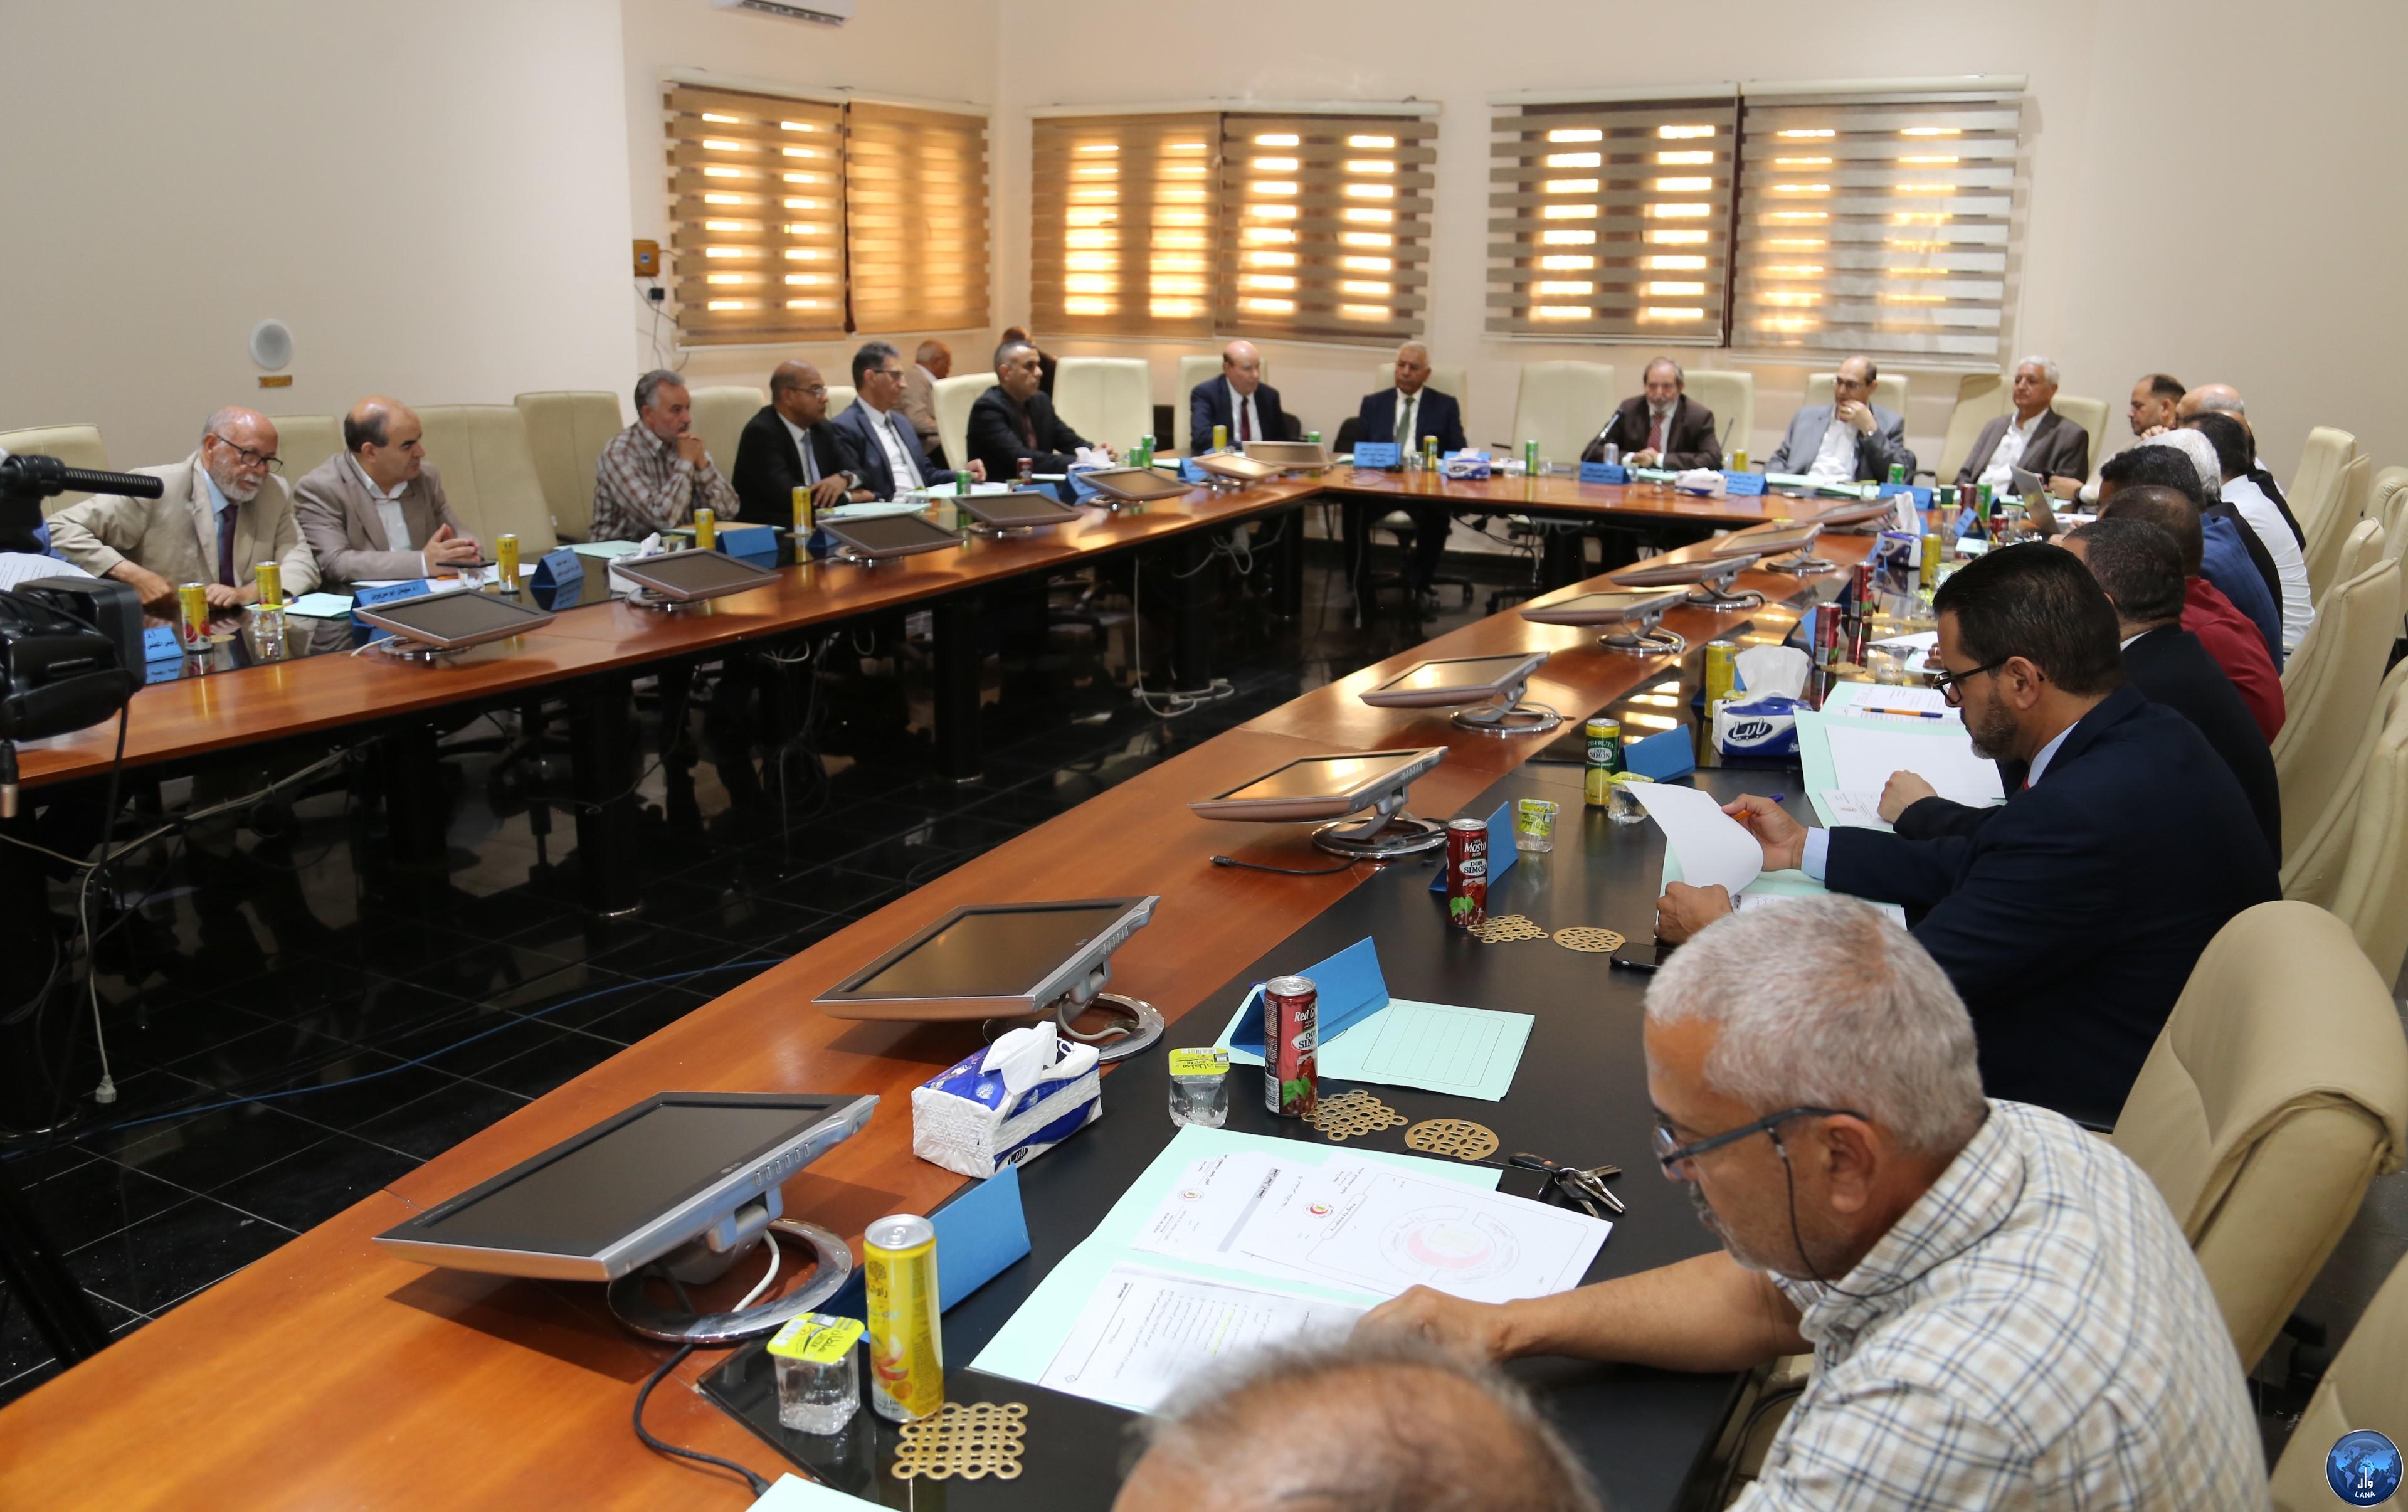 مجلس التخصصات الصحية يناقش مع عمداء كليات الطب  الأهداف  التي تؤدي  إلى مخرجات تعزز الثقة  في الطبيب الليبي  .